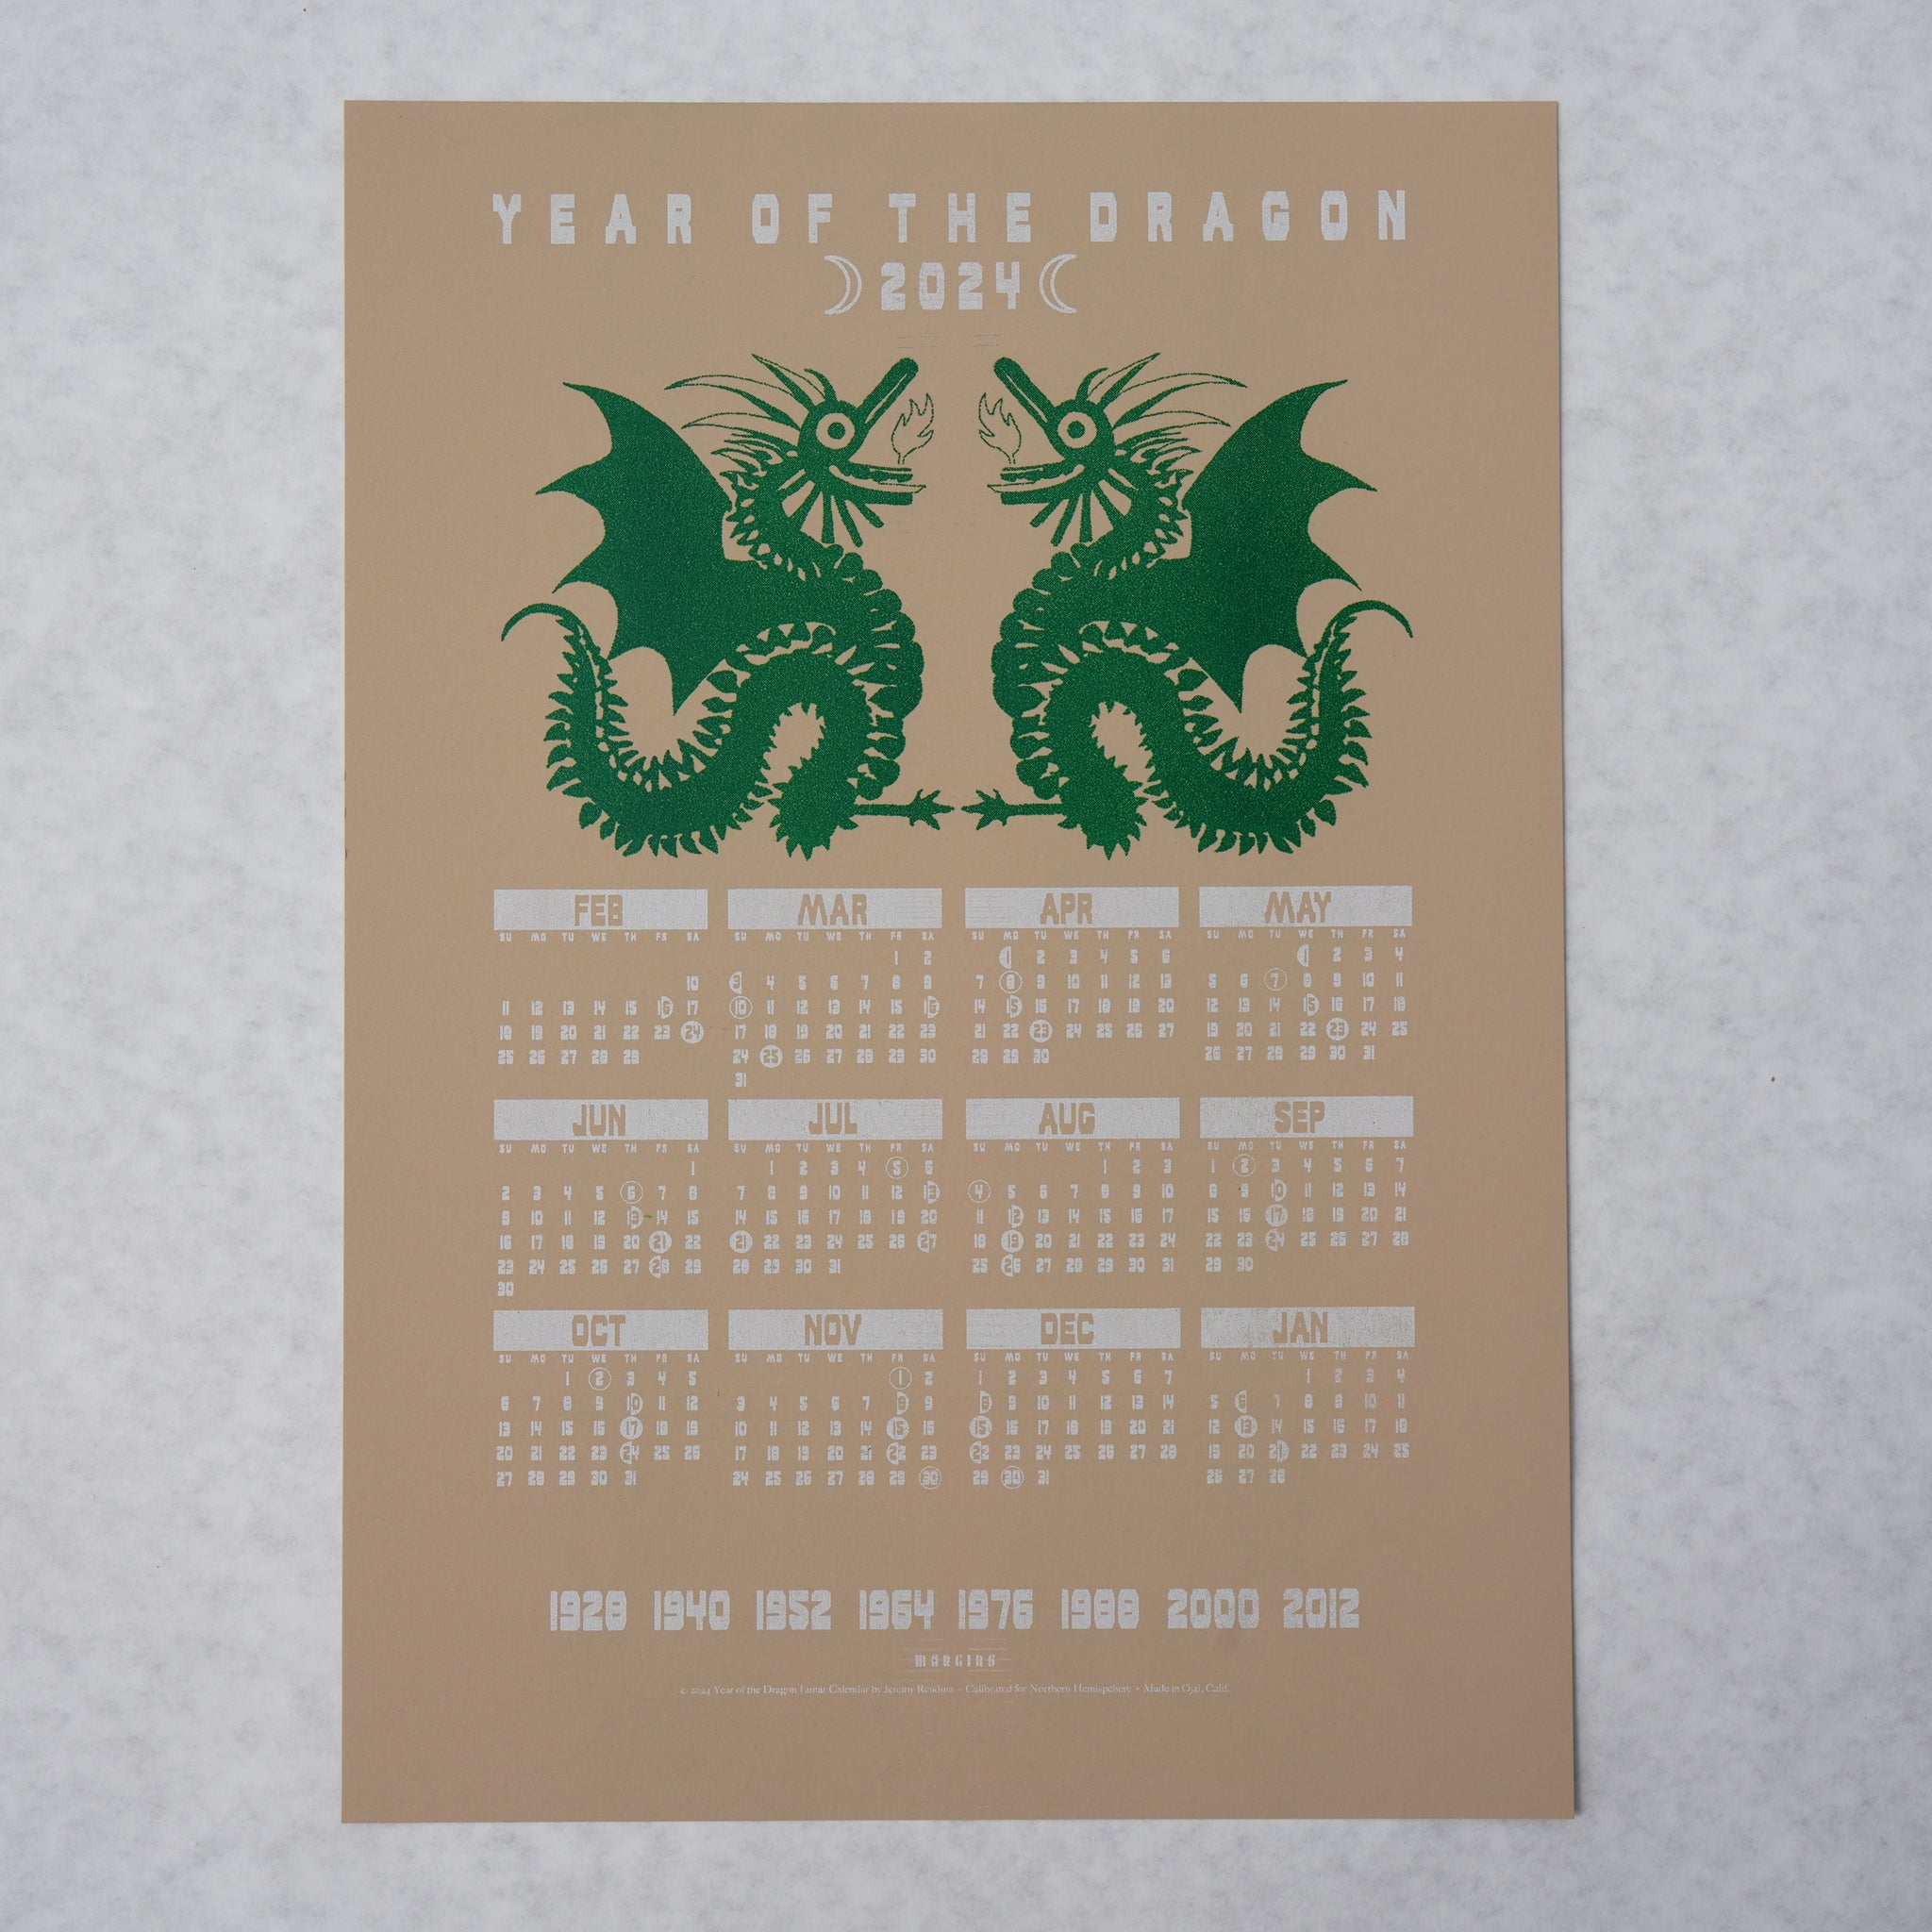 Year of the Dragon - Lunar Calendar